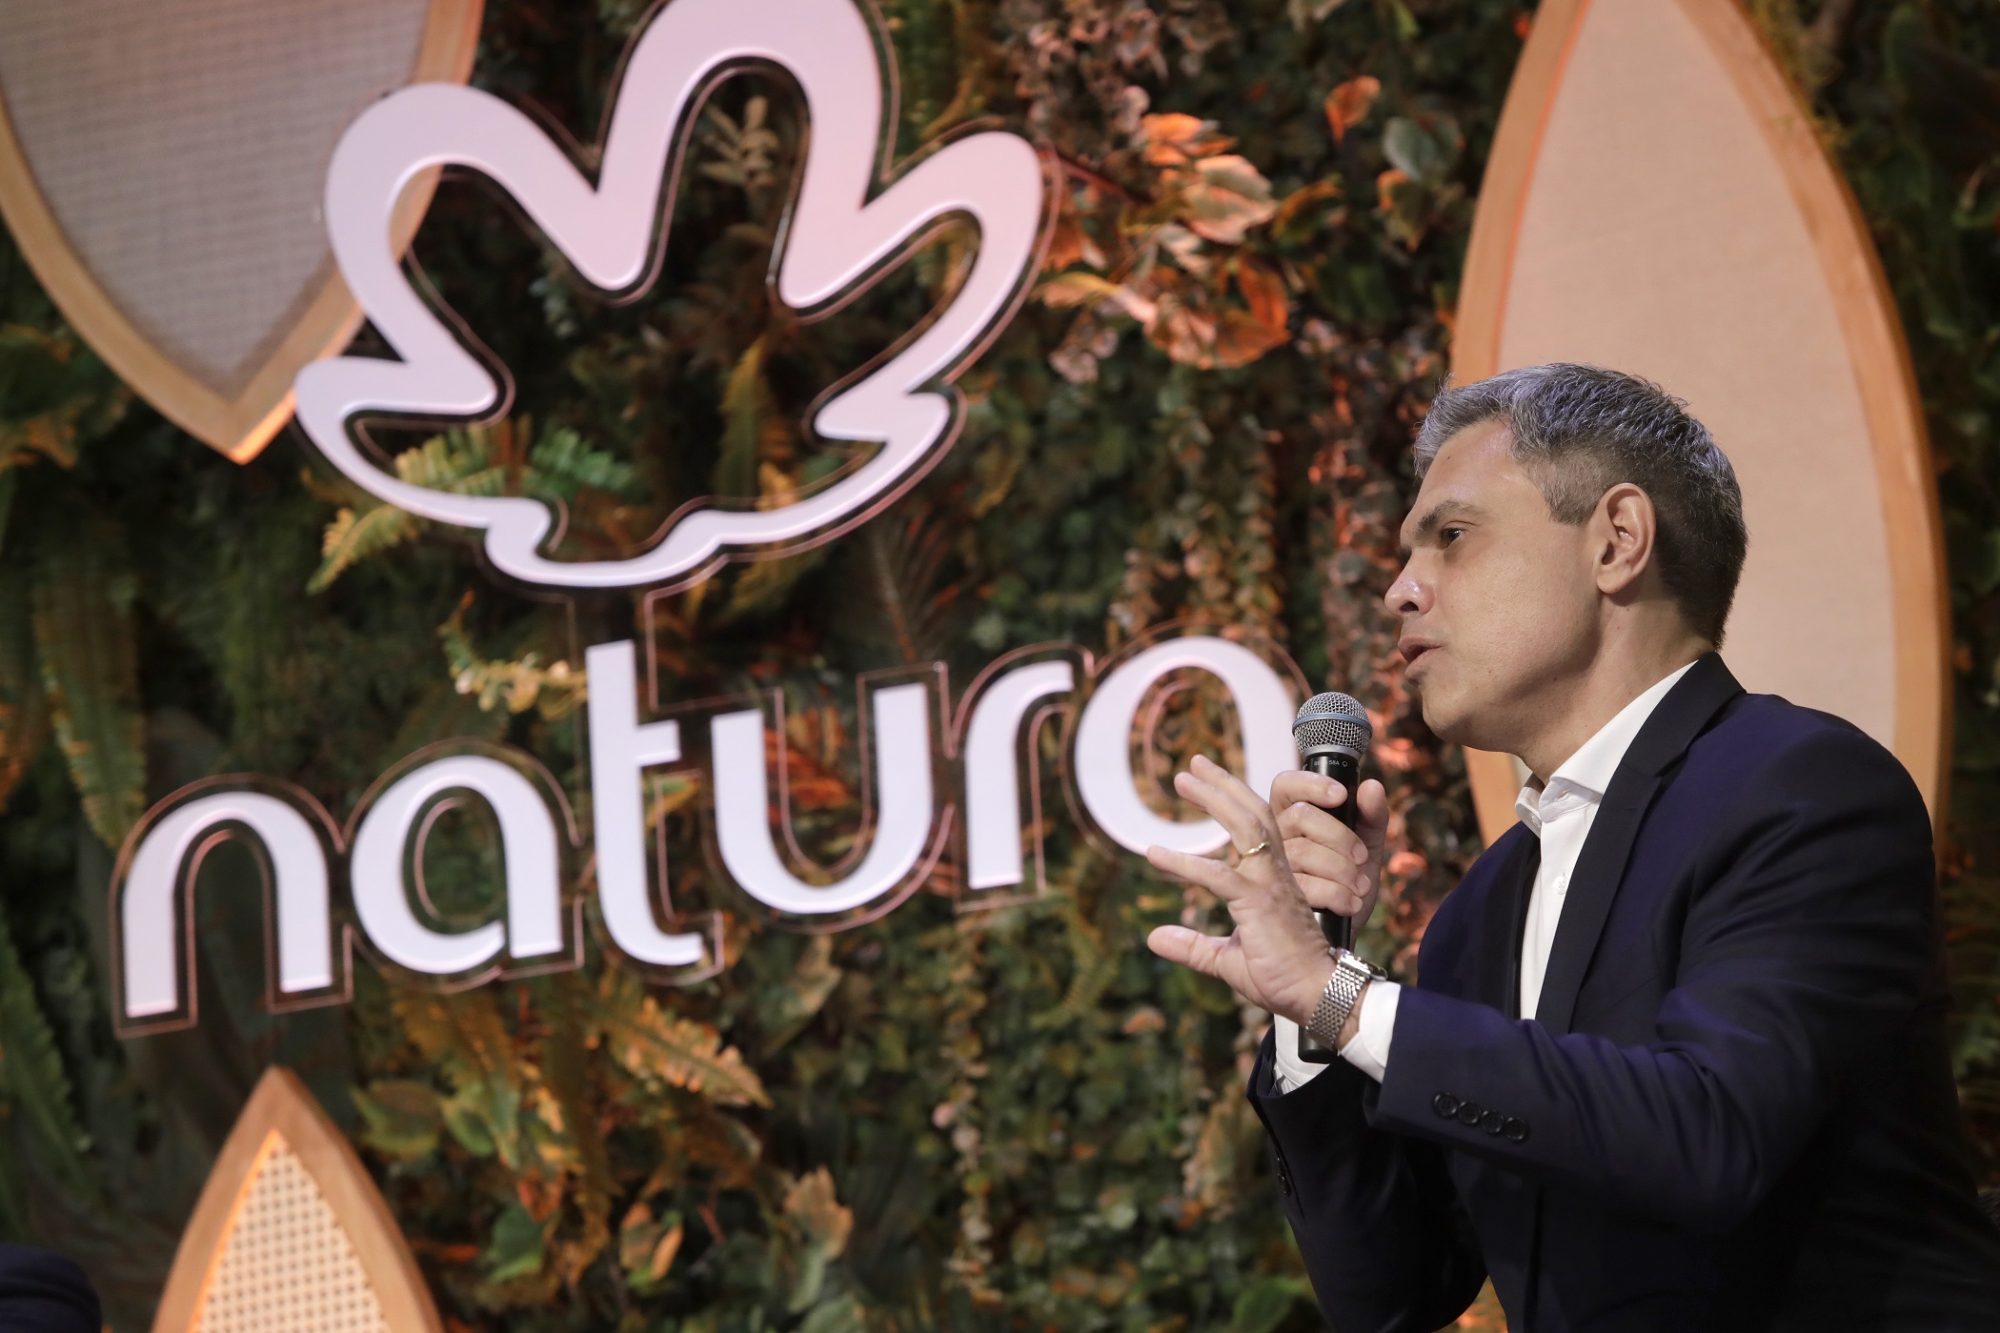 Natura promove diálogo sobre governança corporativa para o impacto positivo